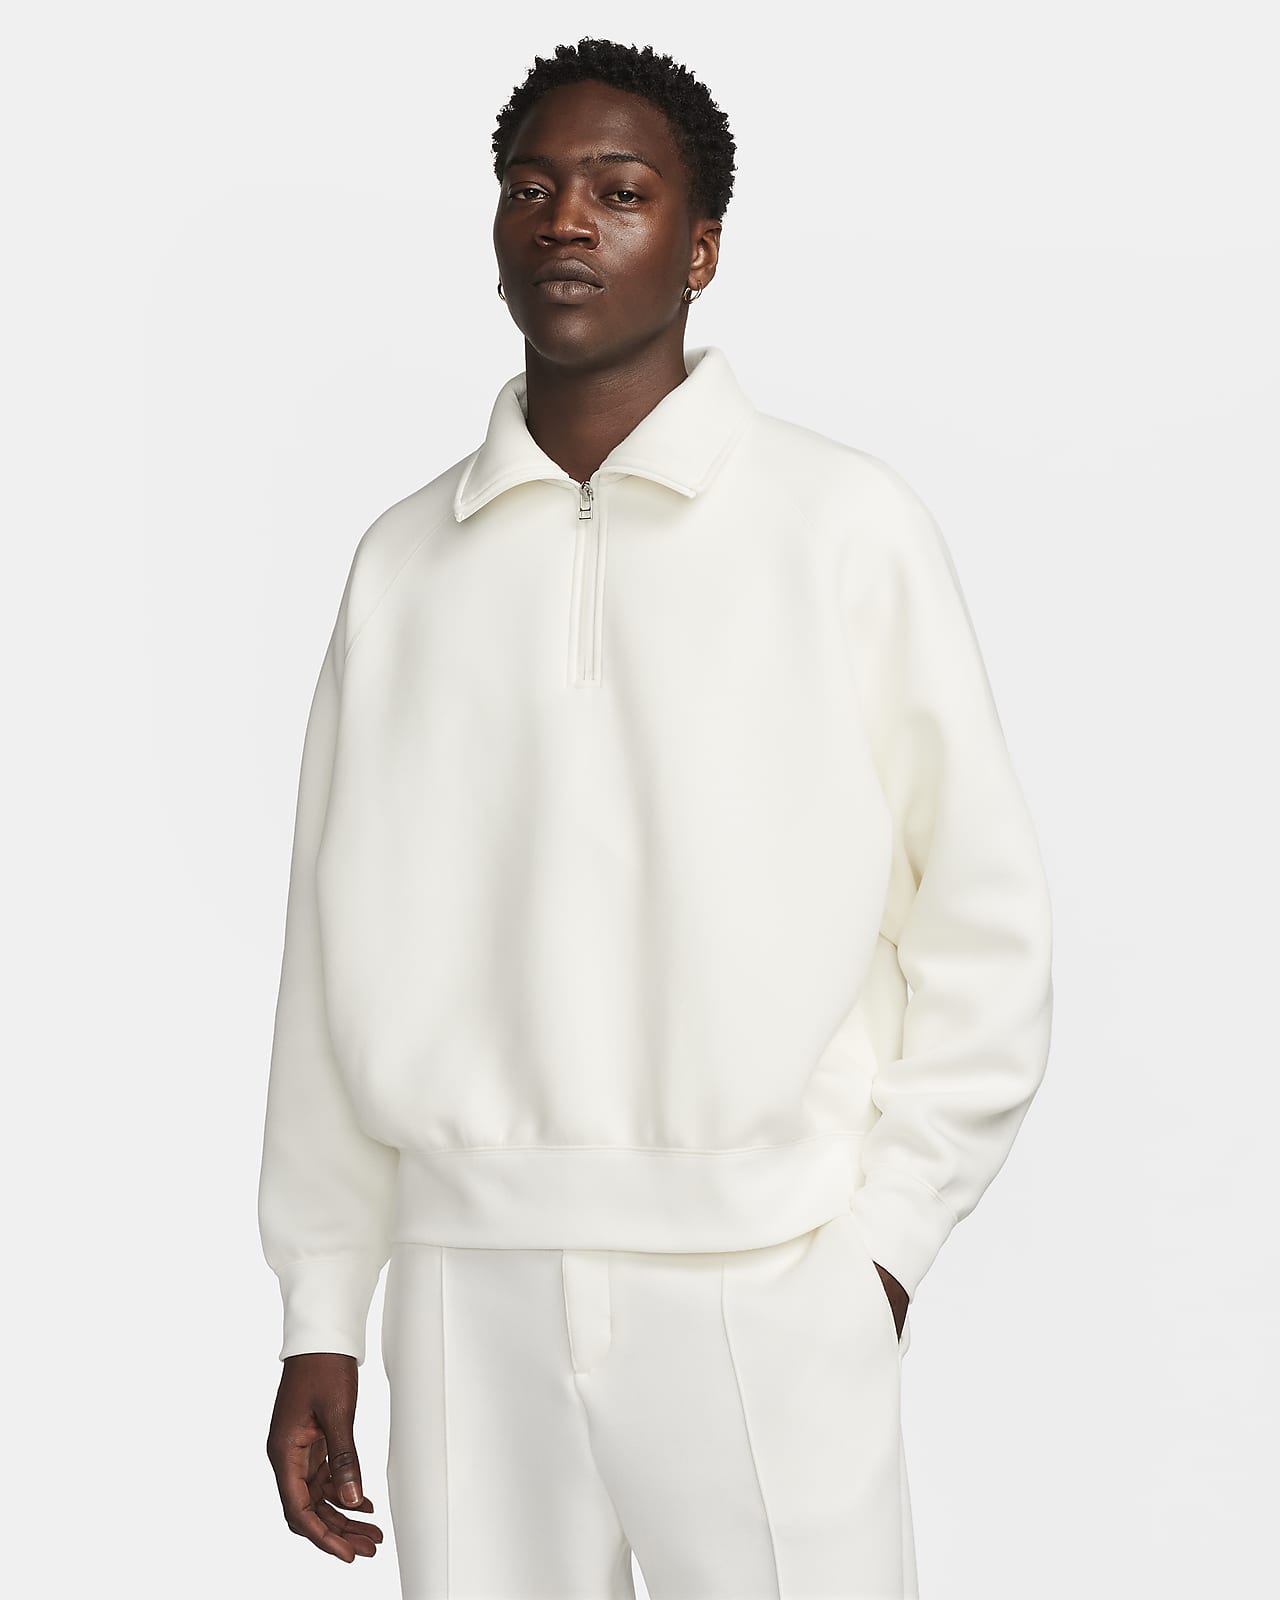 Ανδρική μπλούζα με φερμουάρ στο 1/2 του μήκους Nike Tech Fleece Reimagined